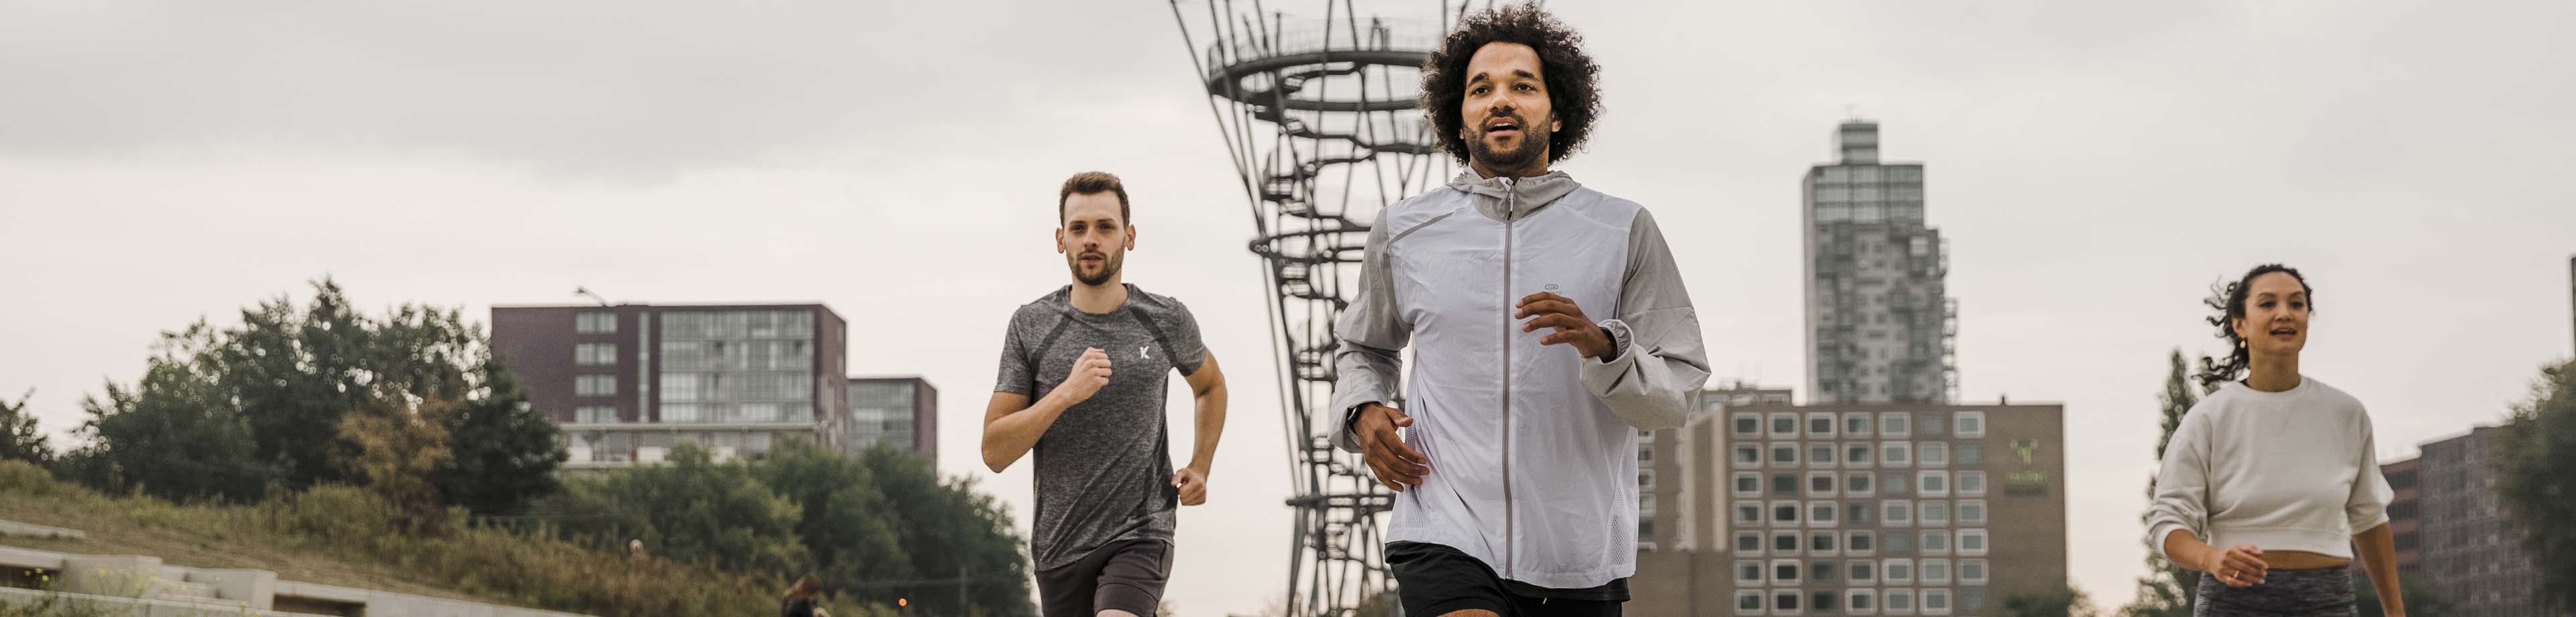 Mensen die samen hardlopen, mentaal en fysiek fitte mensen zijn duurzaam inzetbaar